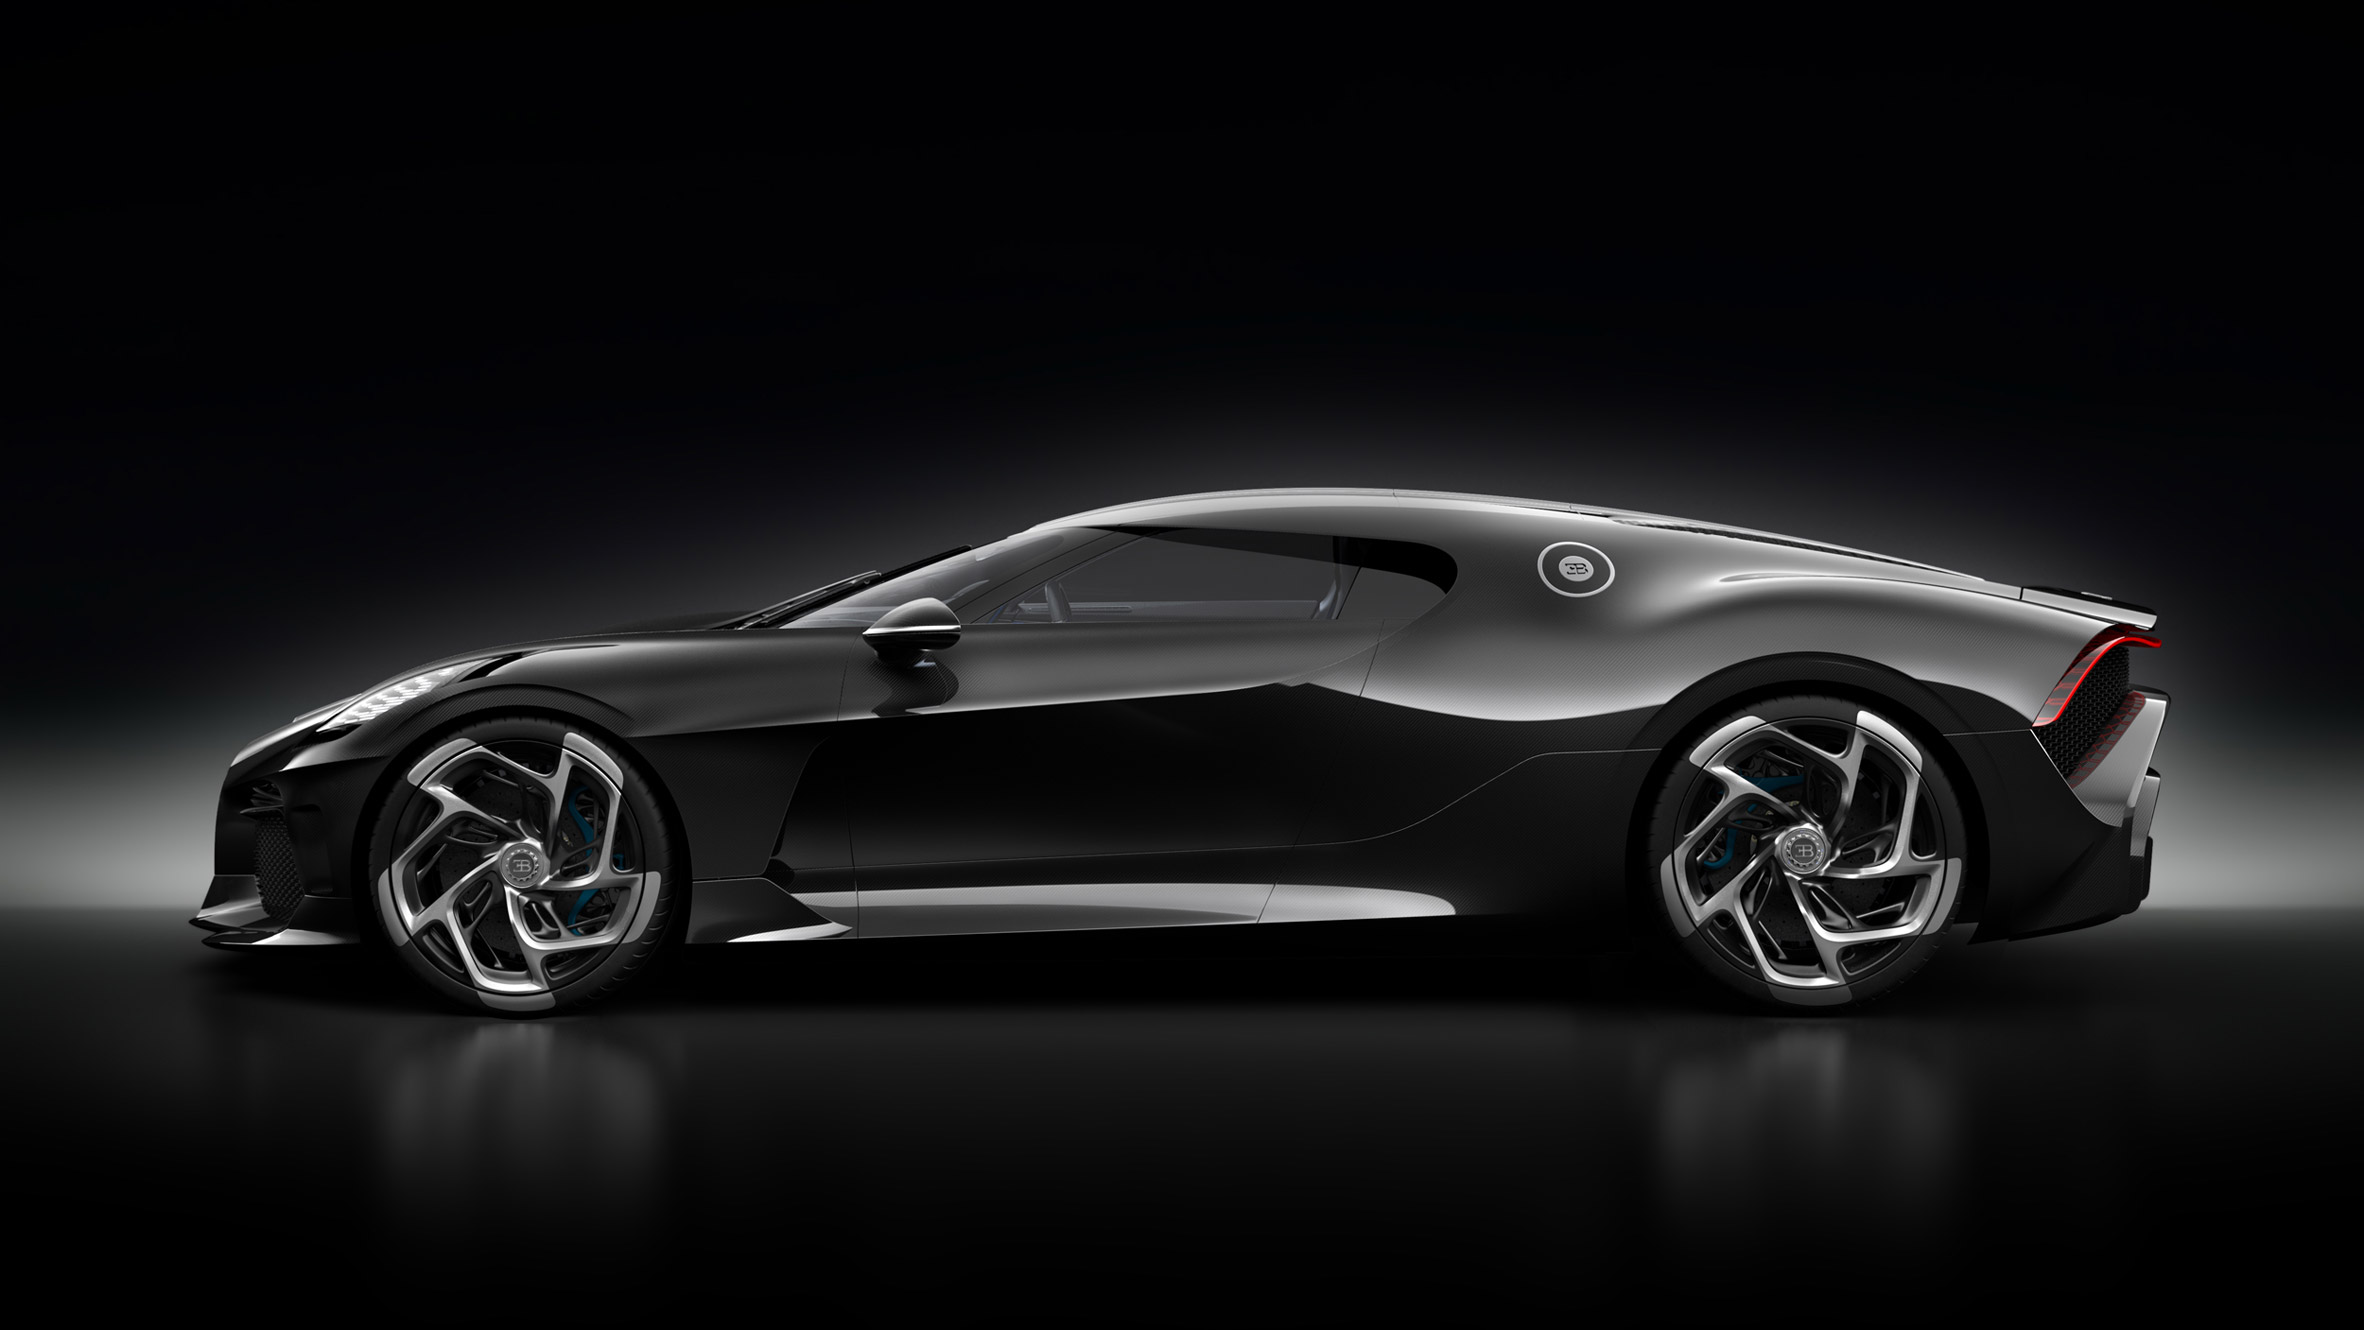 Bugatti's €11 million La Voiture Noire is the "world's most expensive car"